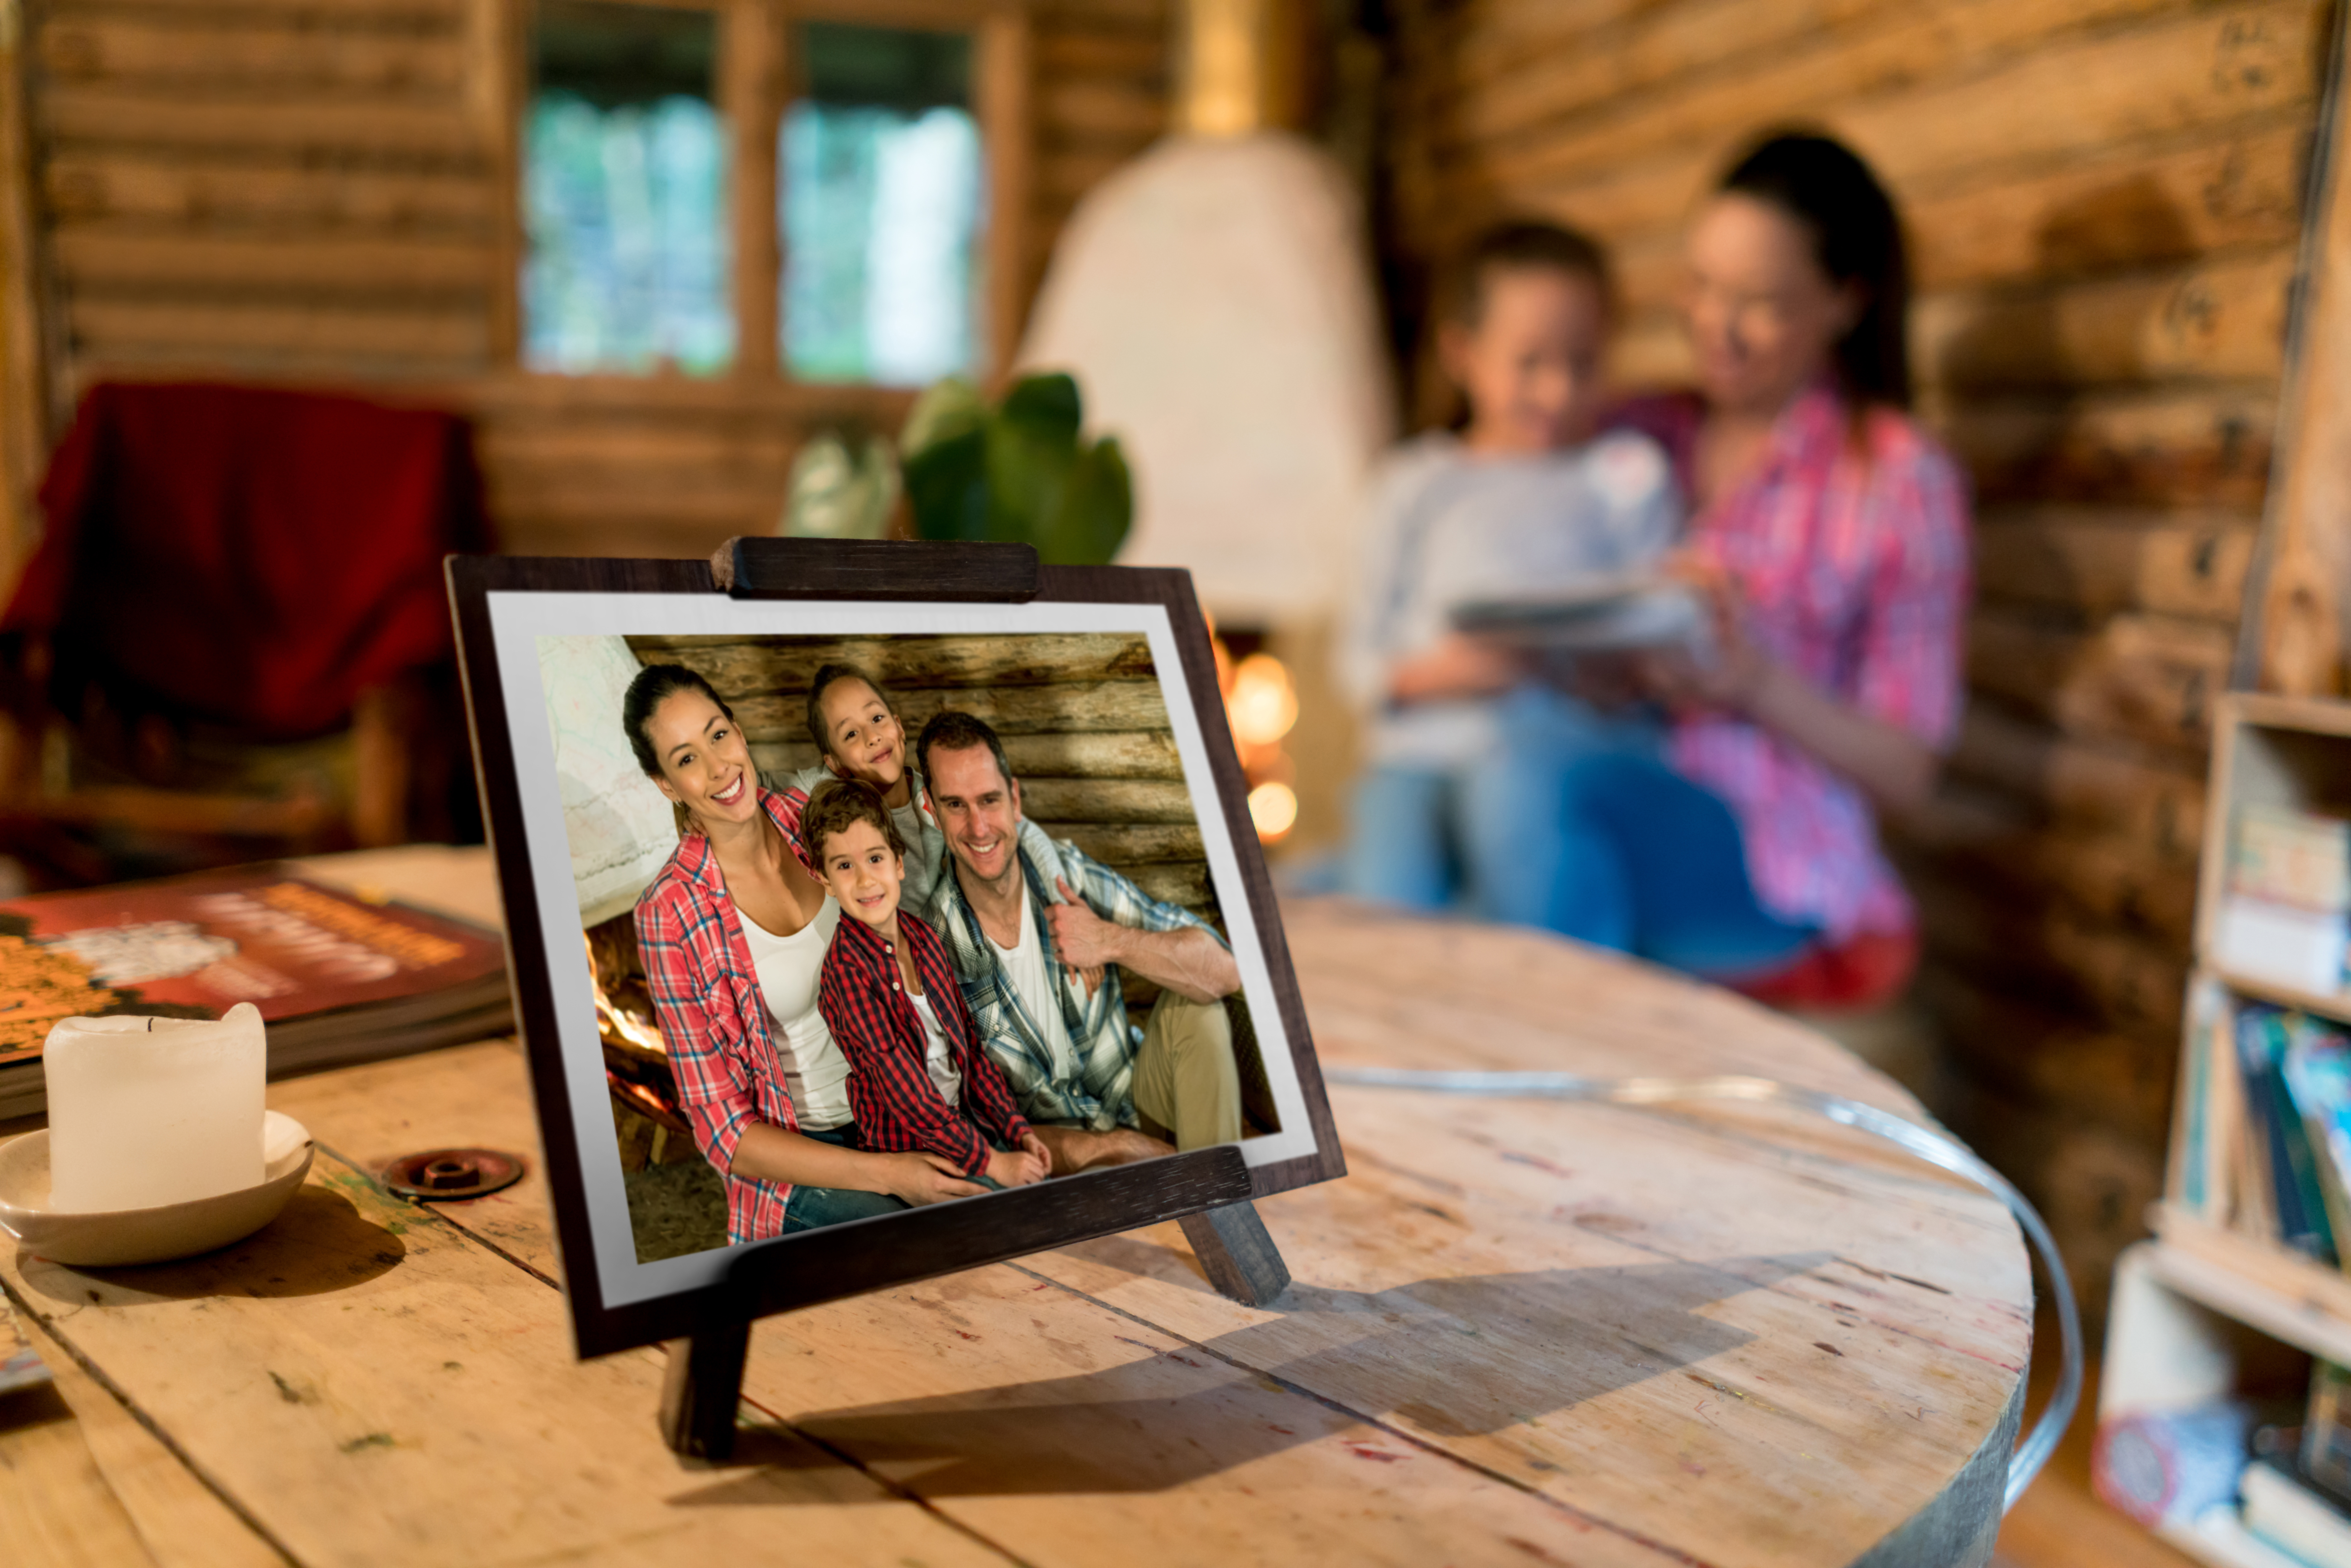 Une belle photo de famille dans un cadre posé sur une table | Source : Getty Images